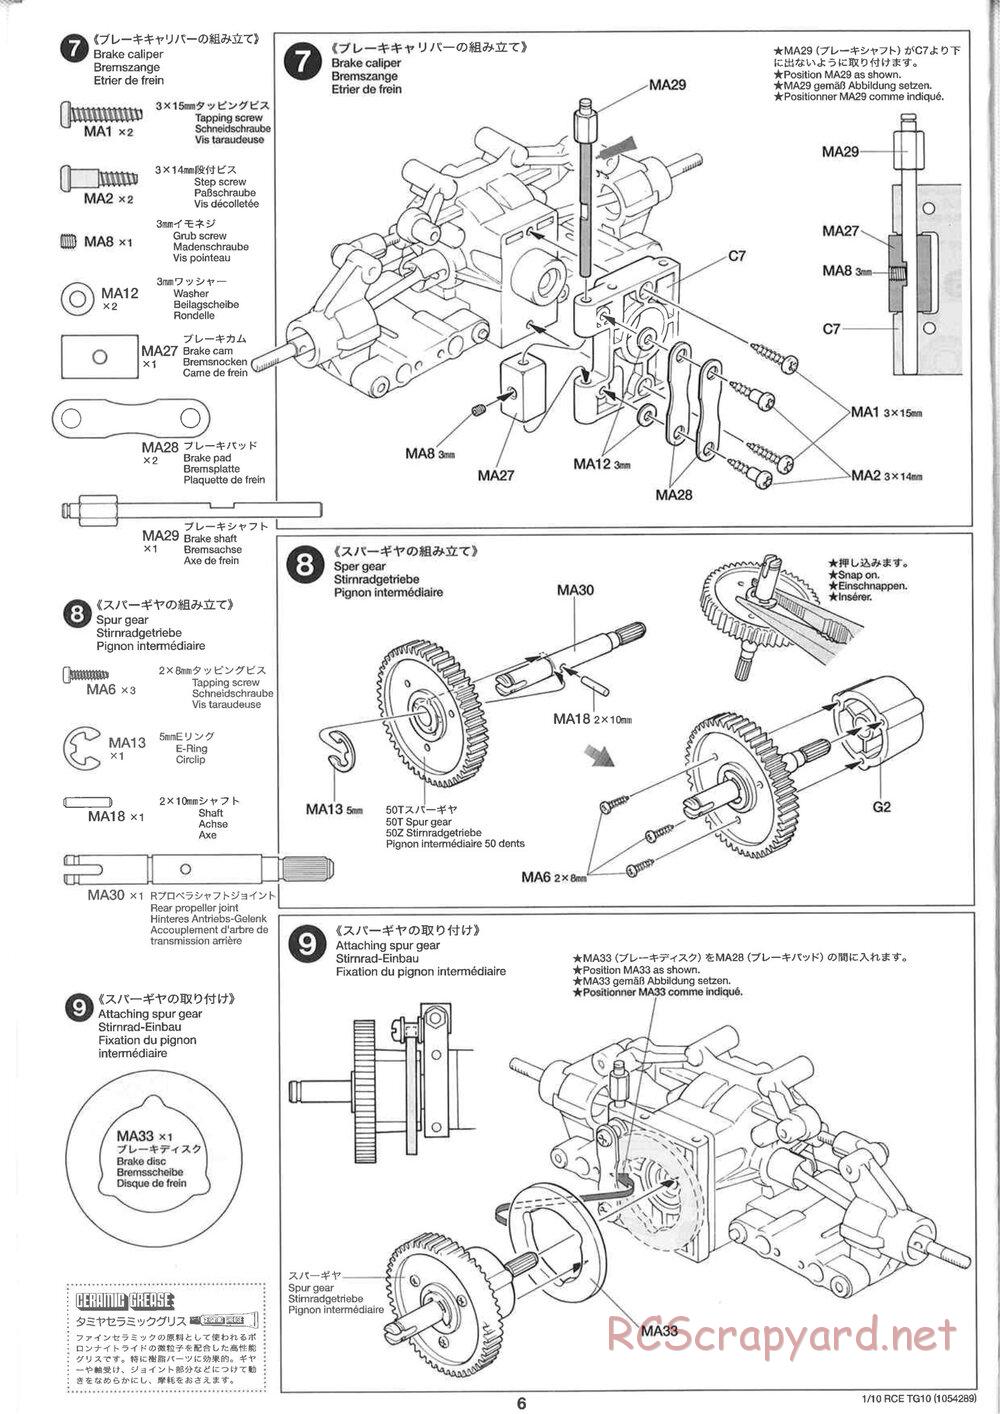 Tamiya - TG10 Mk.1 Chassis - Manual - Page 6